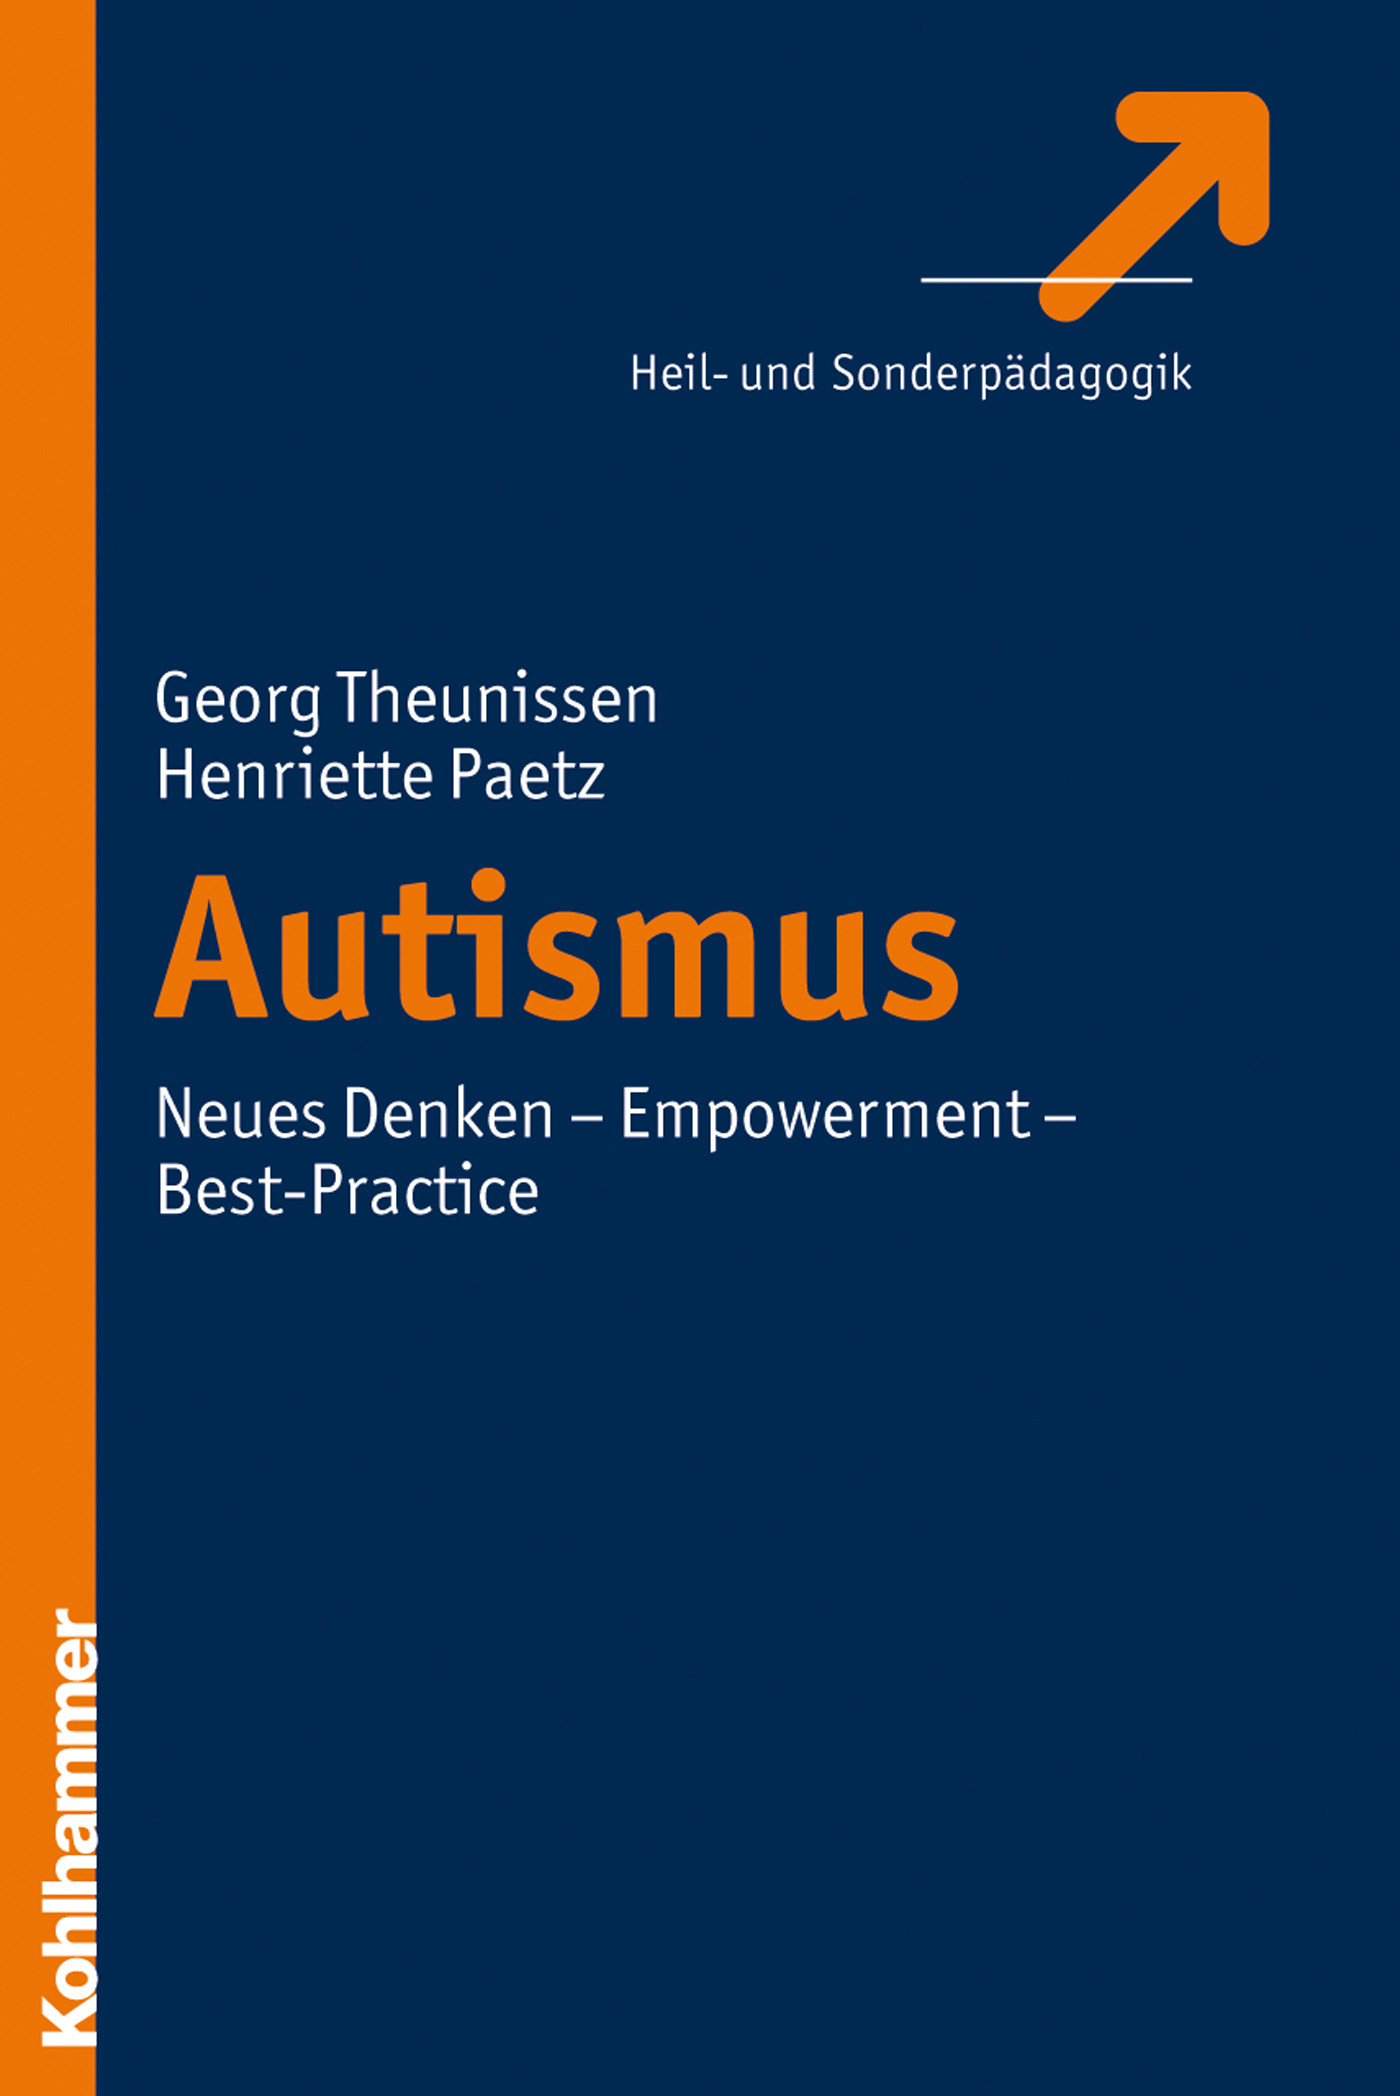 Autismus - PDF/ePUB eBook kaufen | Ebooks Pädagogik ...